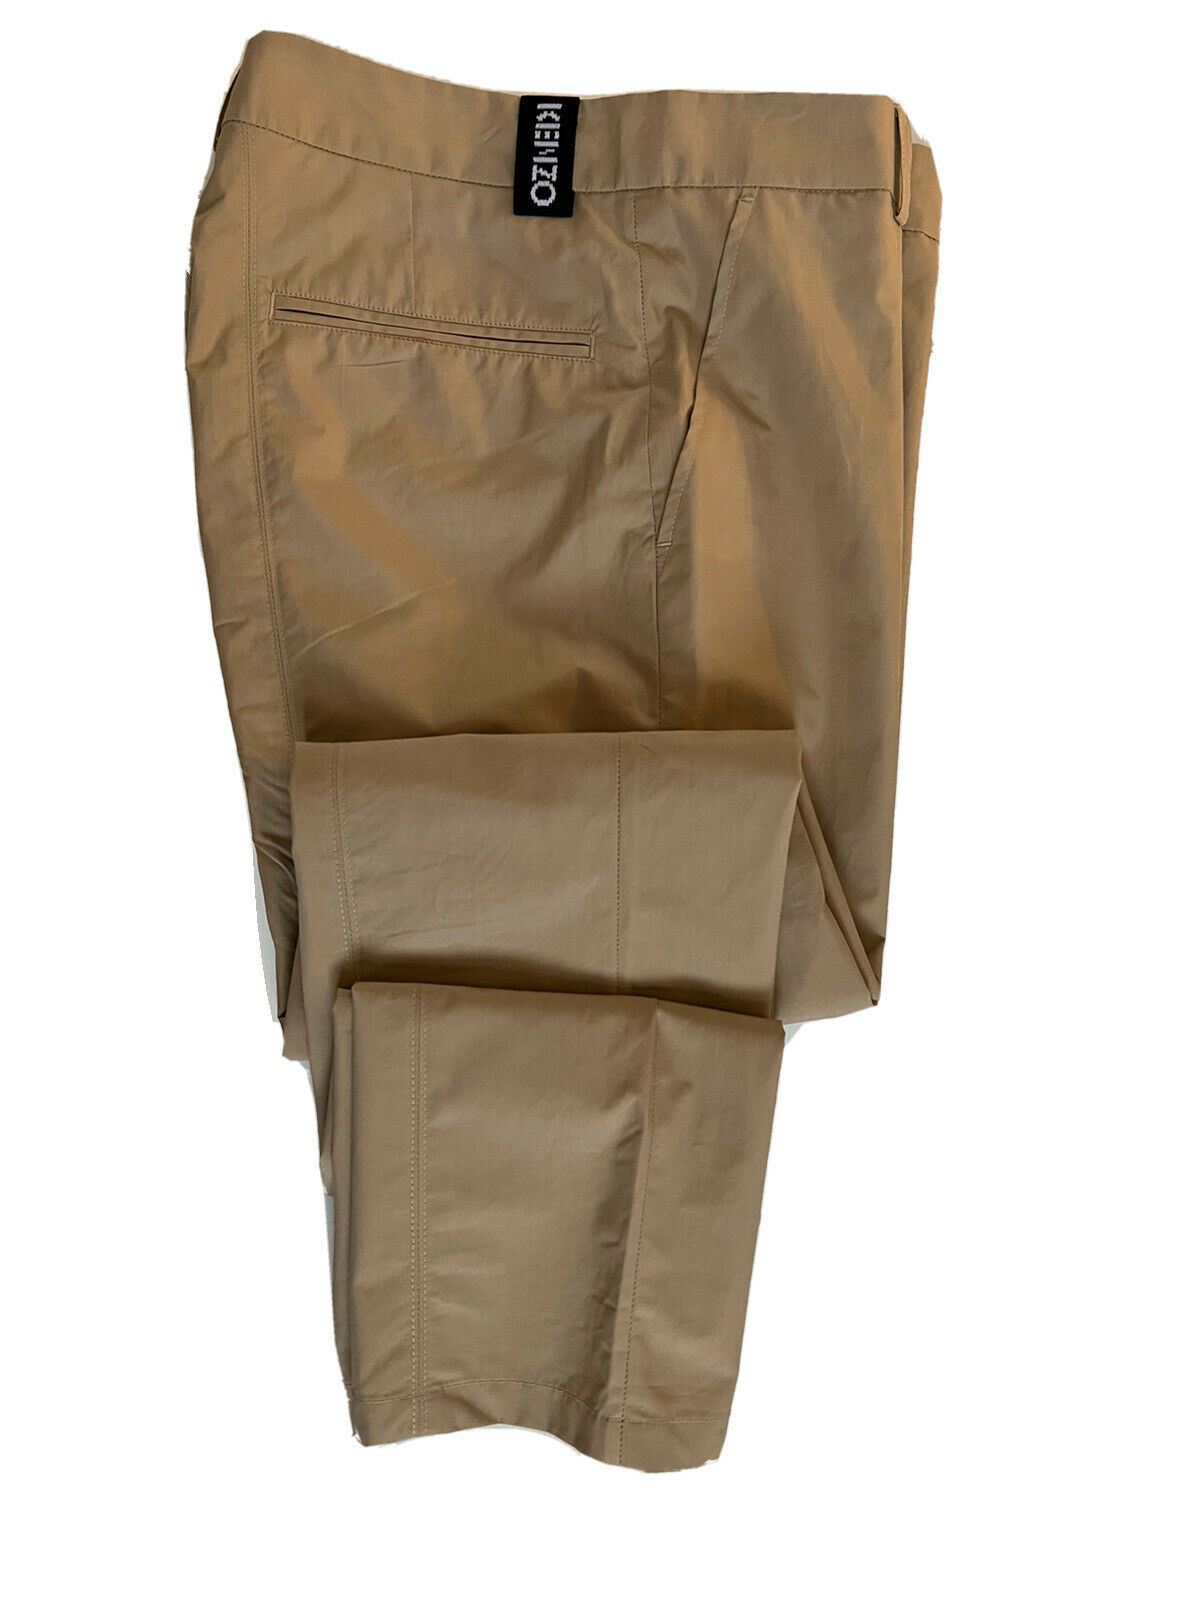 Мужские хлопковые брюки-сигареты KENZO бледно-бежевого цвета, размер 28, США (44 евро), NWT 370 долларов США